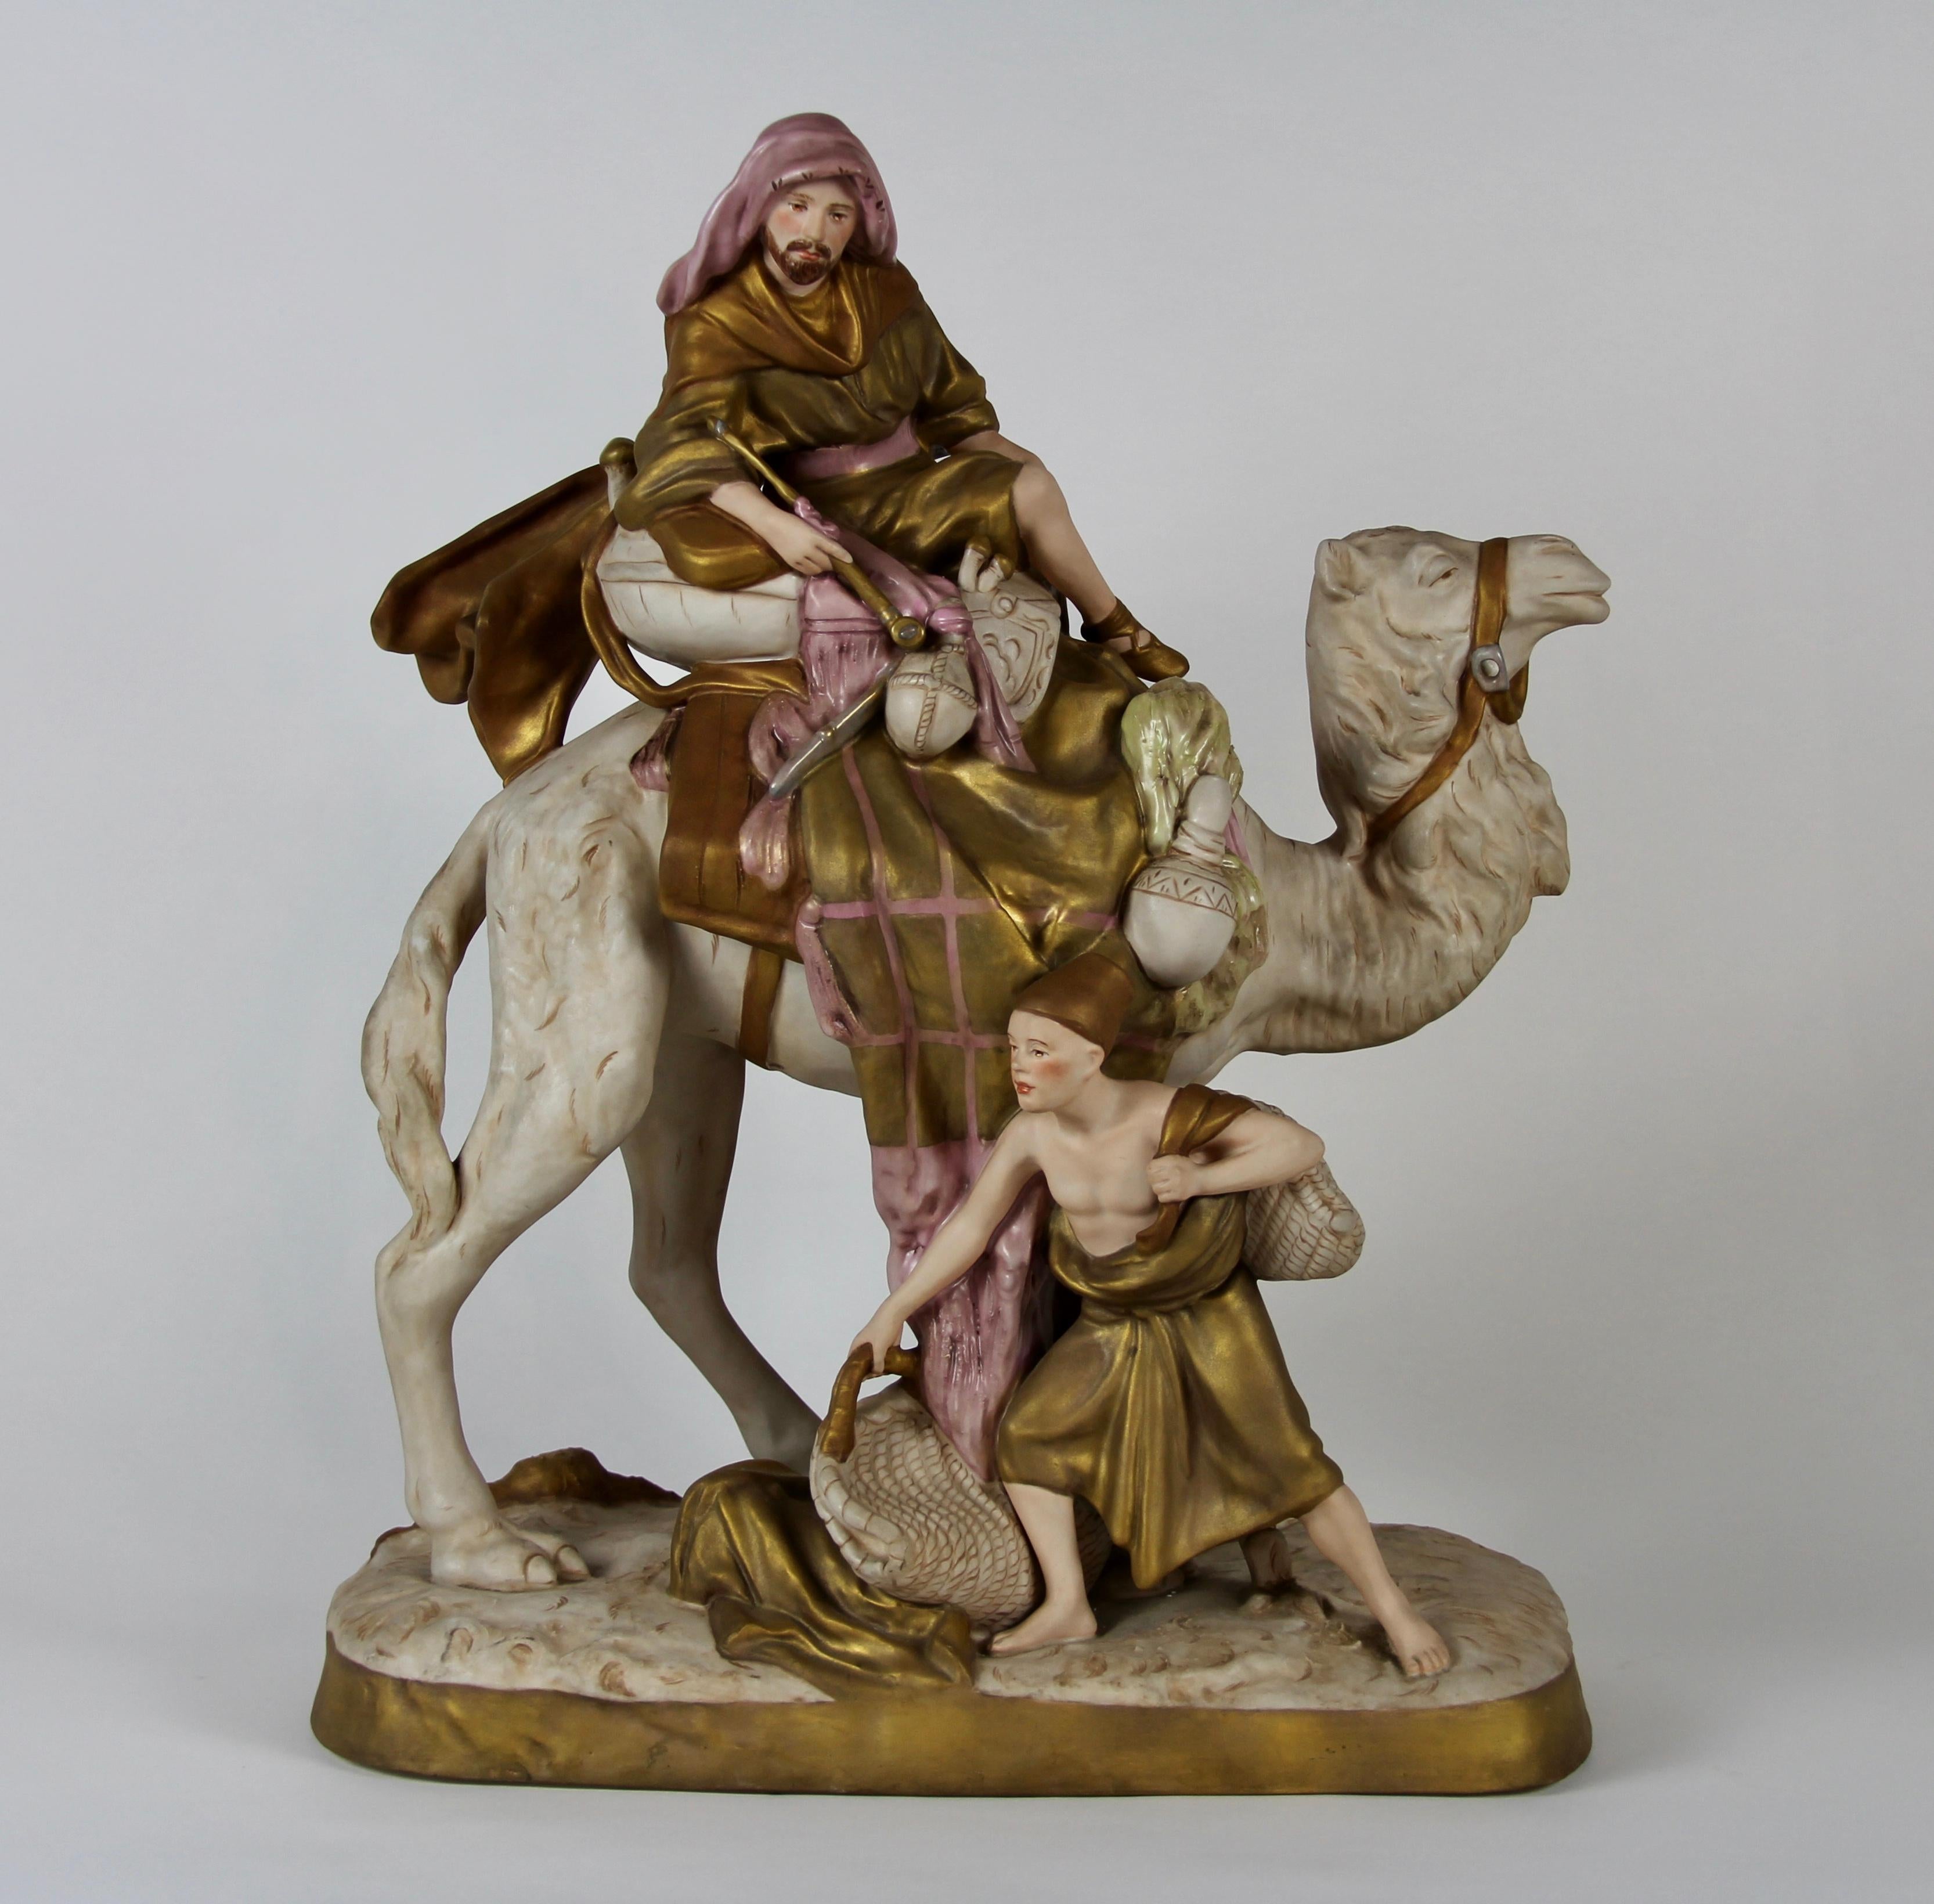 Un fabuleux groupe en porcelaine Royal Dux Bohemia représentant un bédouin orientaliste à dos de chameau avec son accompagnateur. Il s'agit d'un bel exemple d'un groupe de porcelaine Royal Dux du début des années 1900. Toutes ces pièces sont